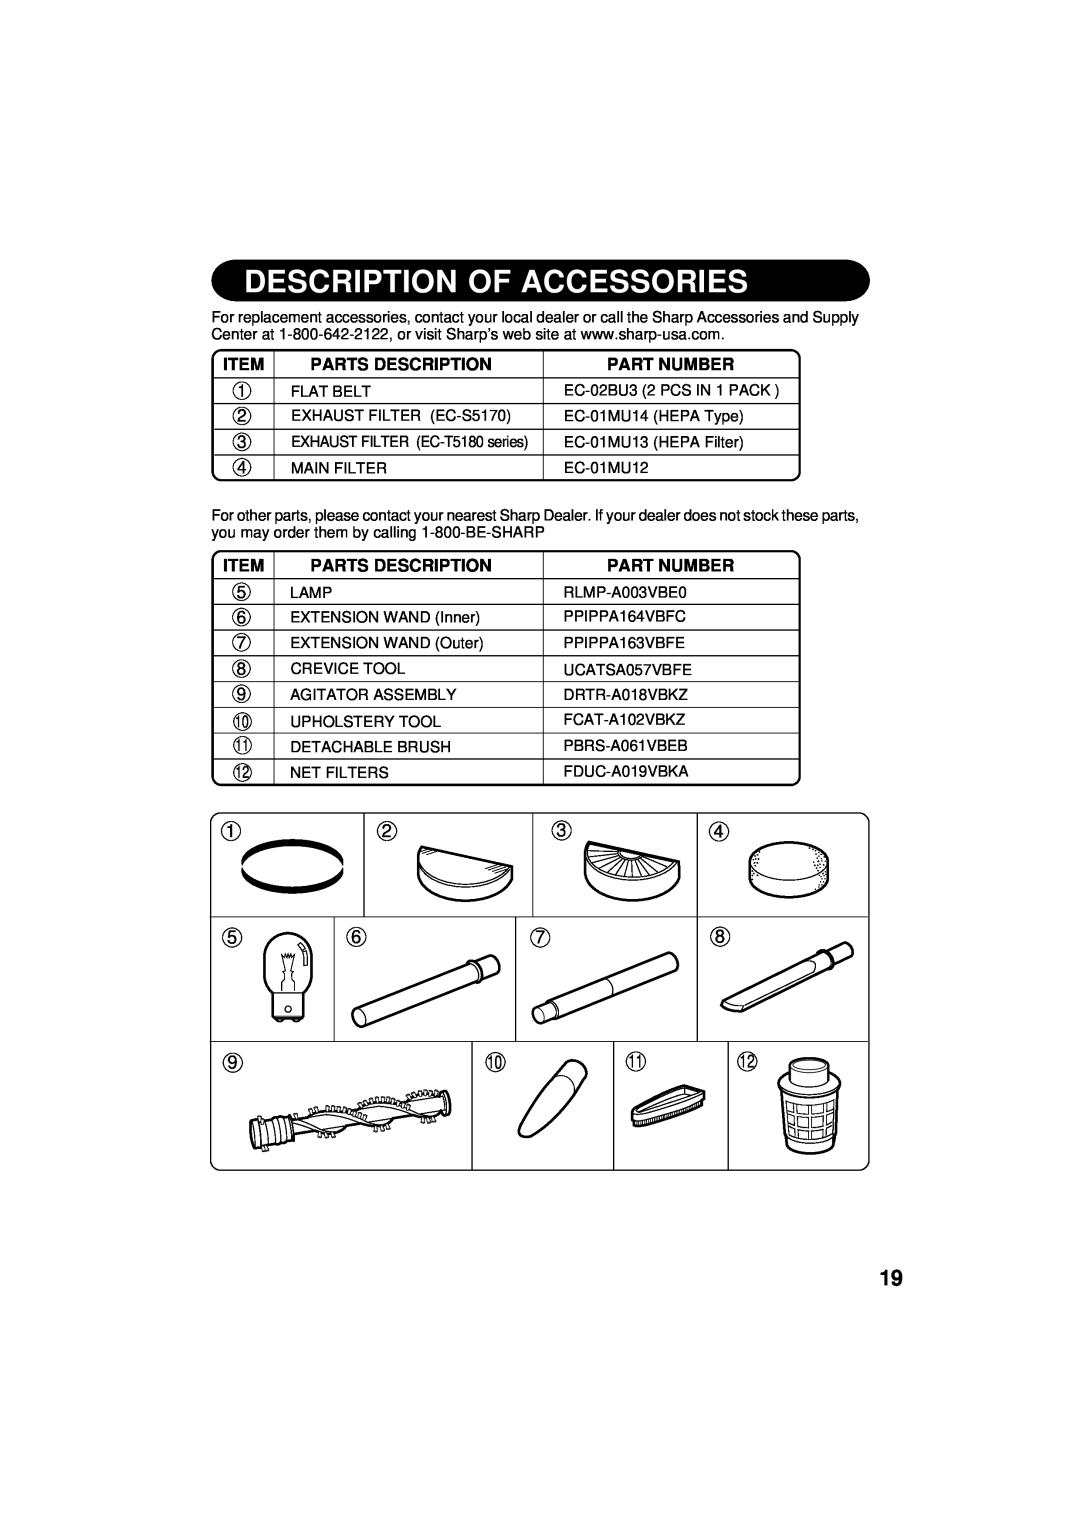 Sharp EC-T5180B, EC-T5180A, EC-S5170 operation manual Description Of Accessories, Parts Description, Part Number 